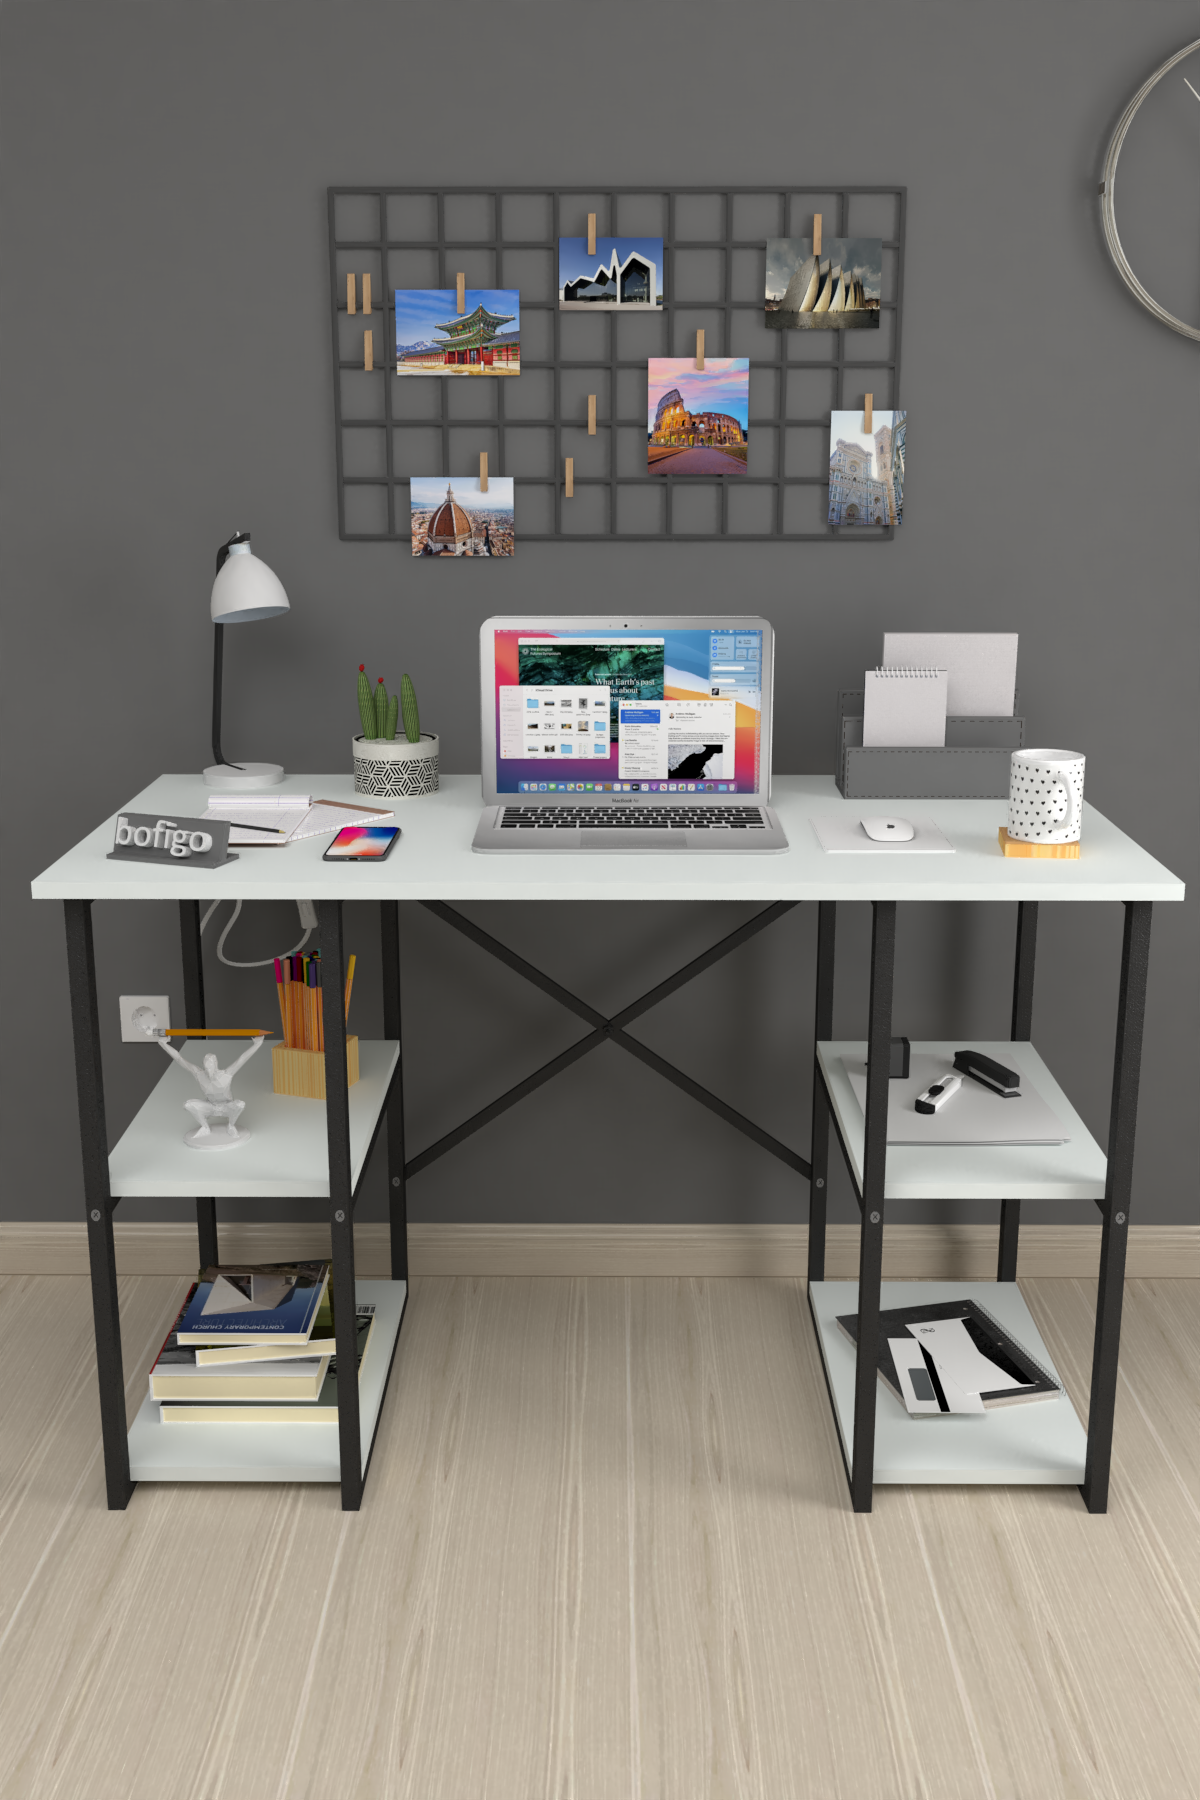 Bofigo 4 Shelf Study Desk 60x120 cm  White